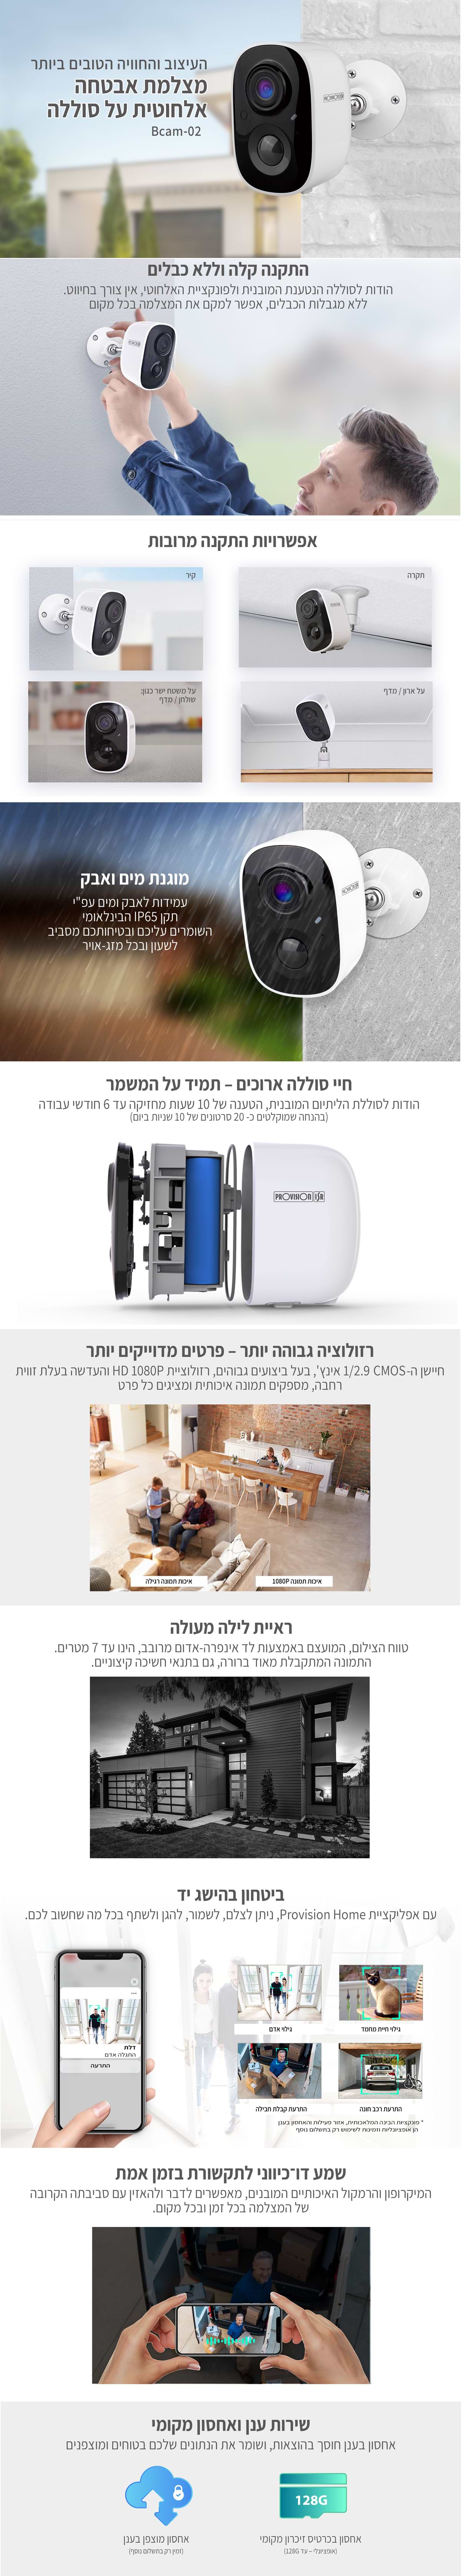 מצלמת אבטחה אלחוטית עם סוללה ProVision ISR Bcam-02 - צבע לבן שנתיים אחריות ע"י היבואן הרשמי